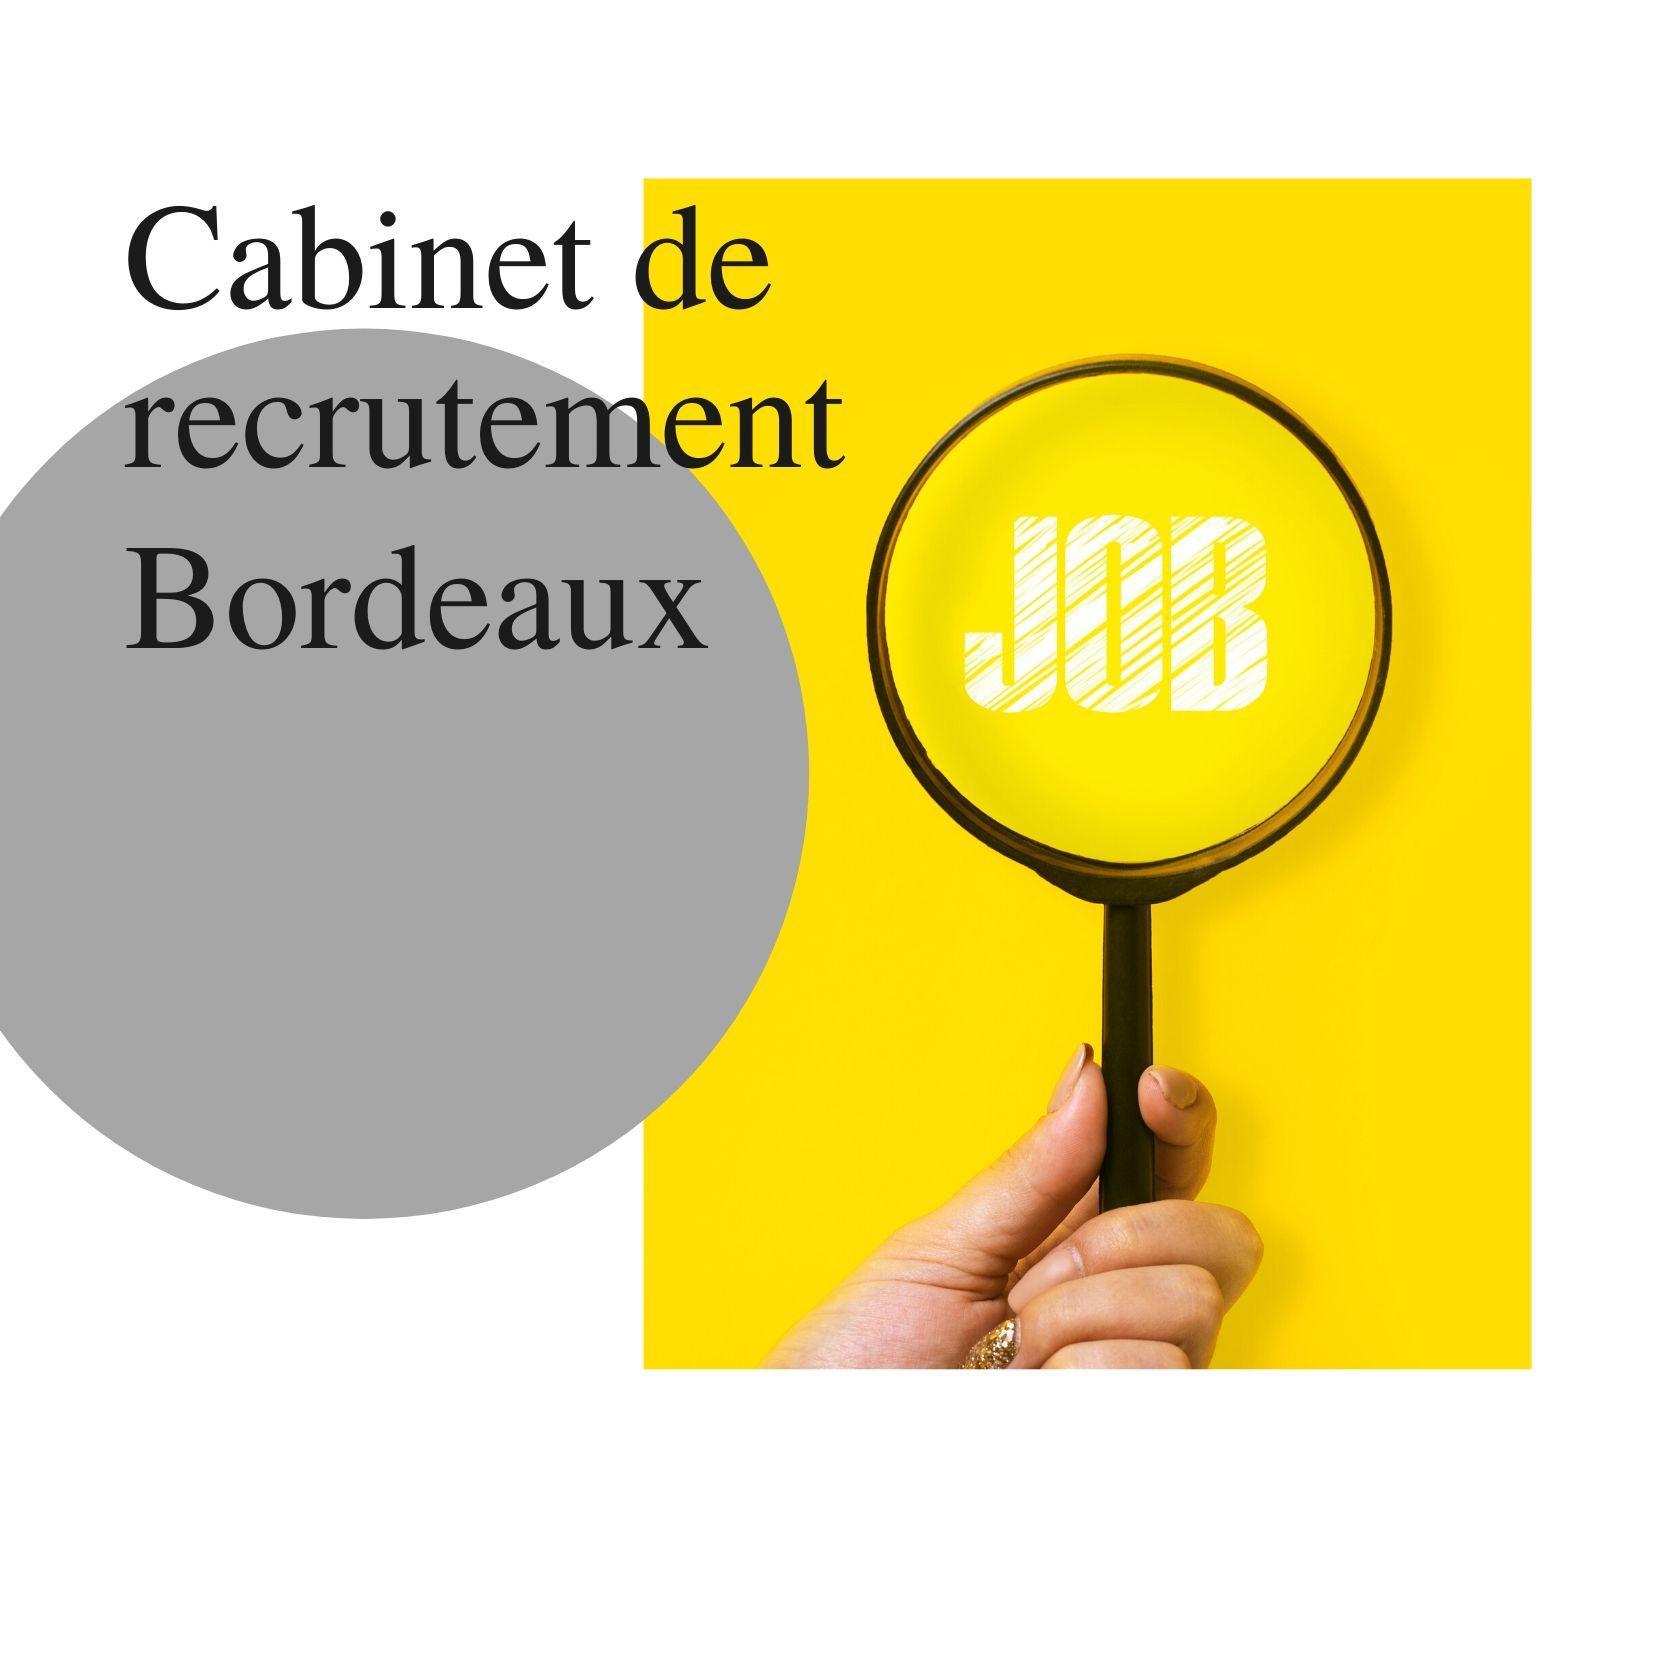 Cabinet de recrutement Bordeaux